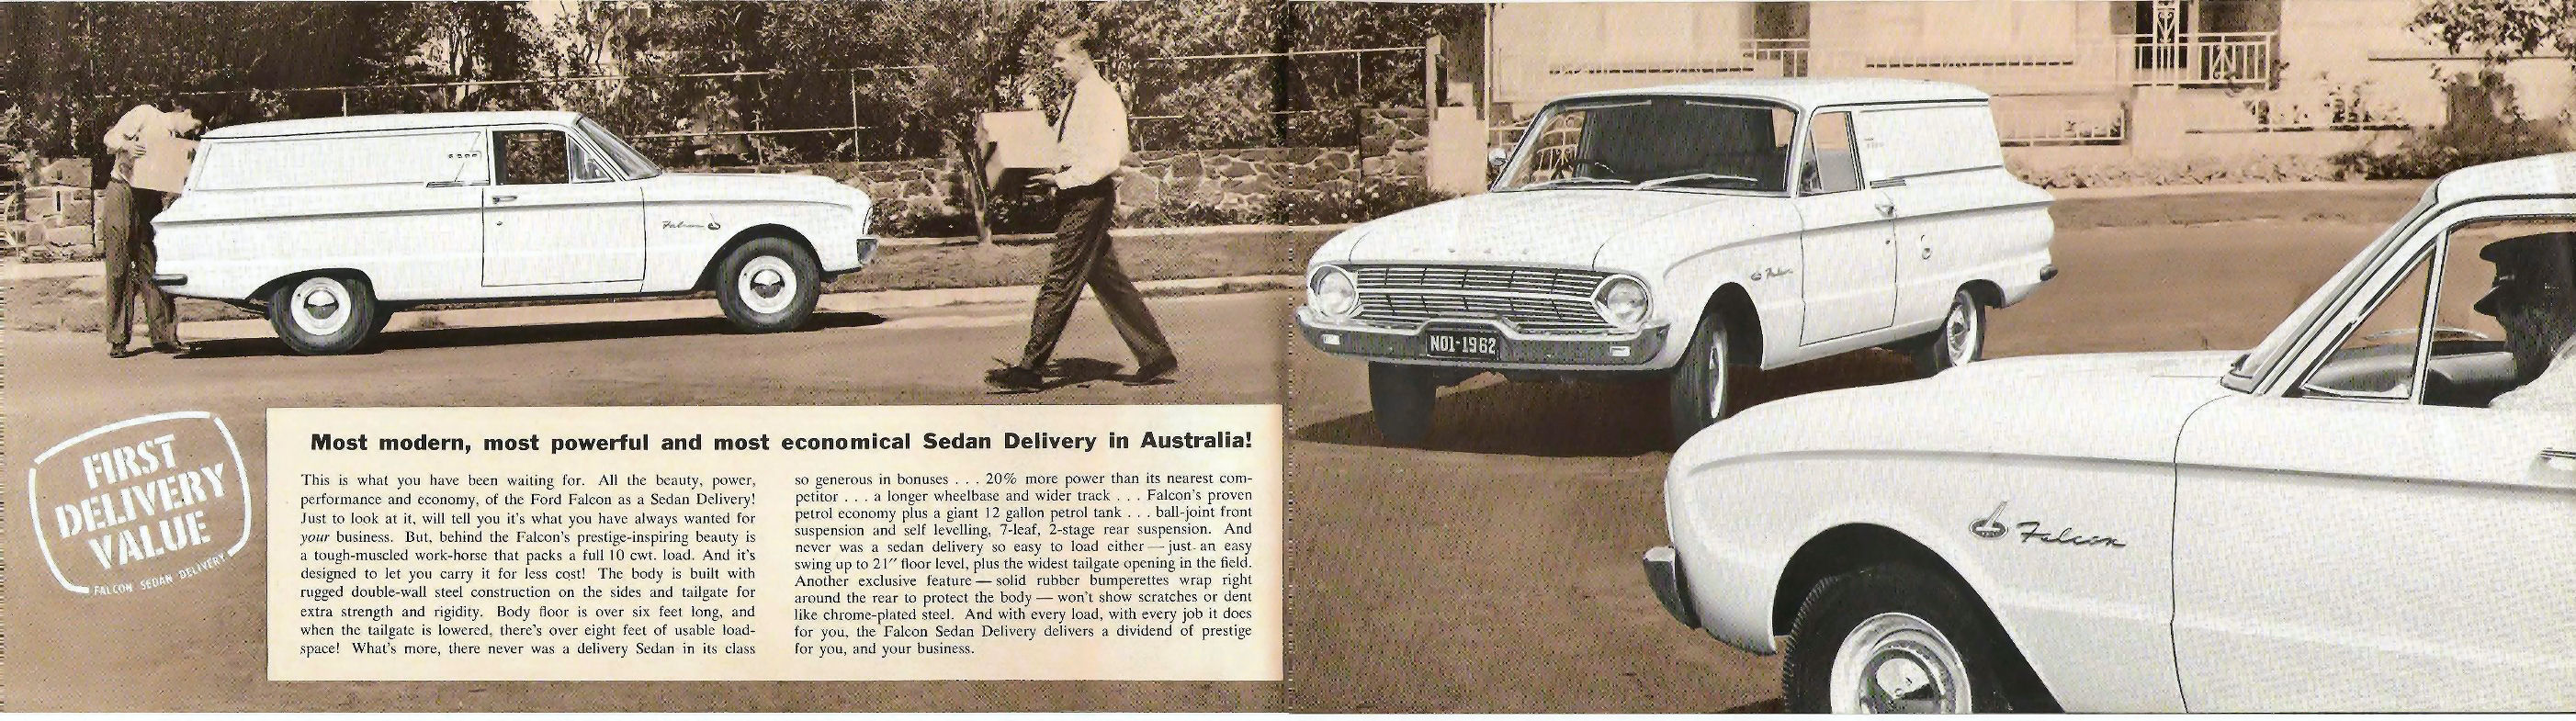 1962_Ford_Falcon_Sedan_Delivery_Aus-01-02